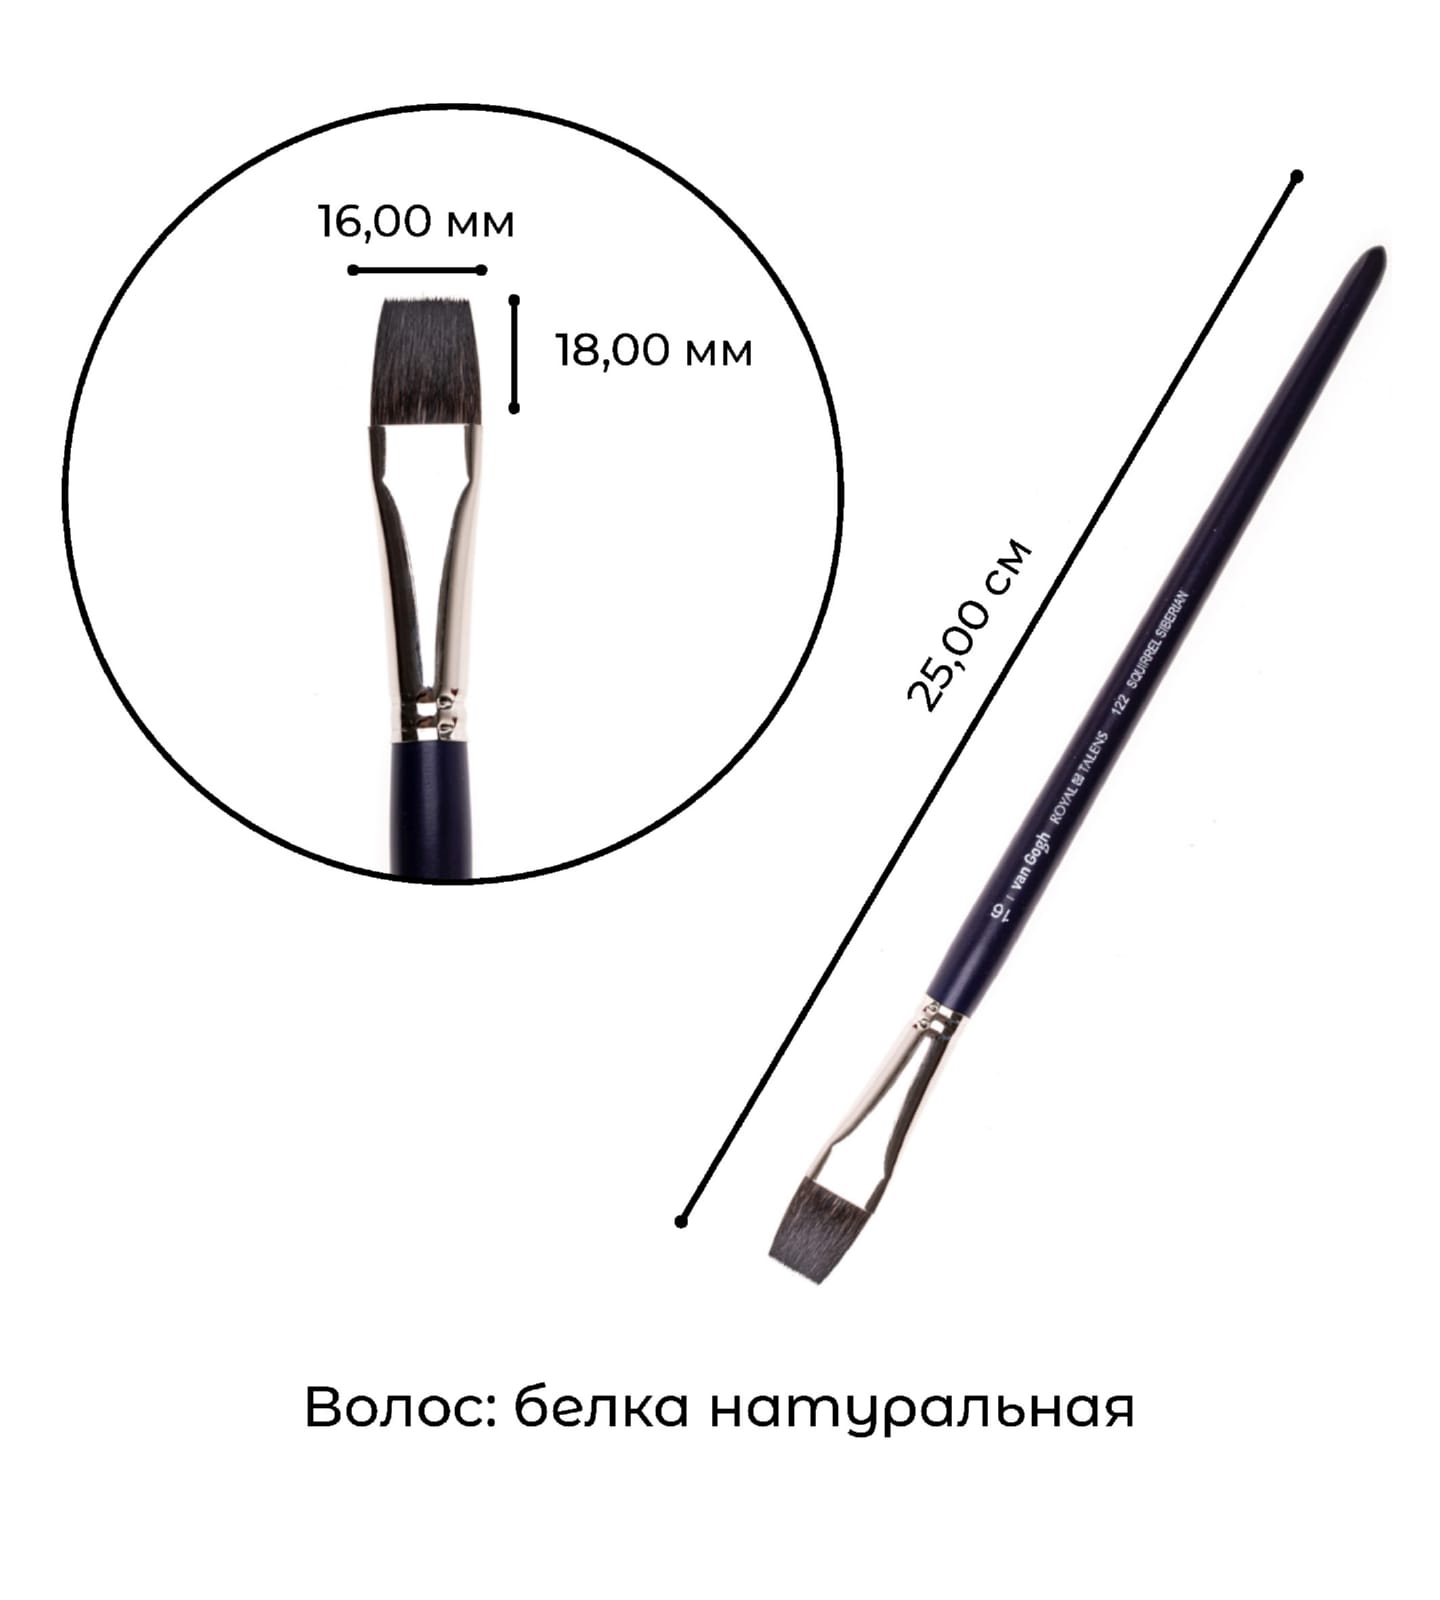 Кисть для акварели Van Gogh 122 белка сибирская плоская ручка короткая 2 шт/упак 13 размеров в ассортименте